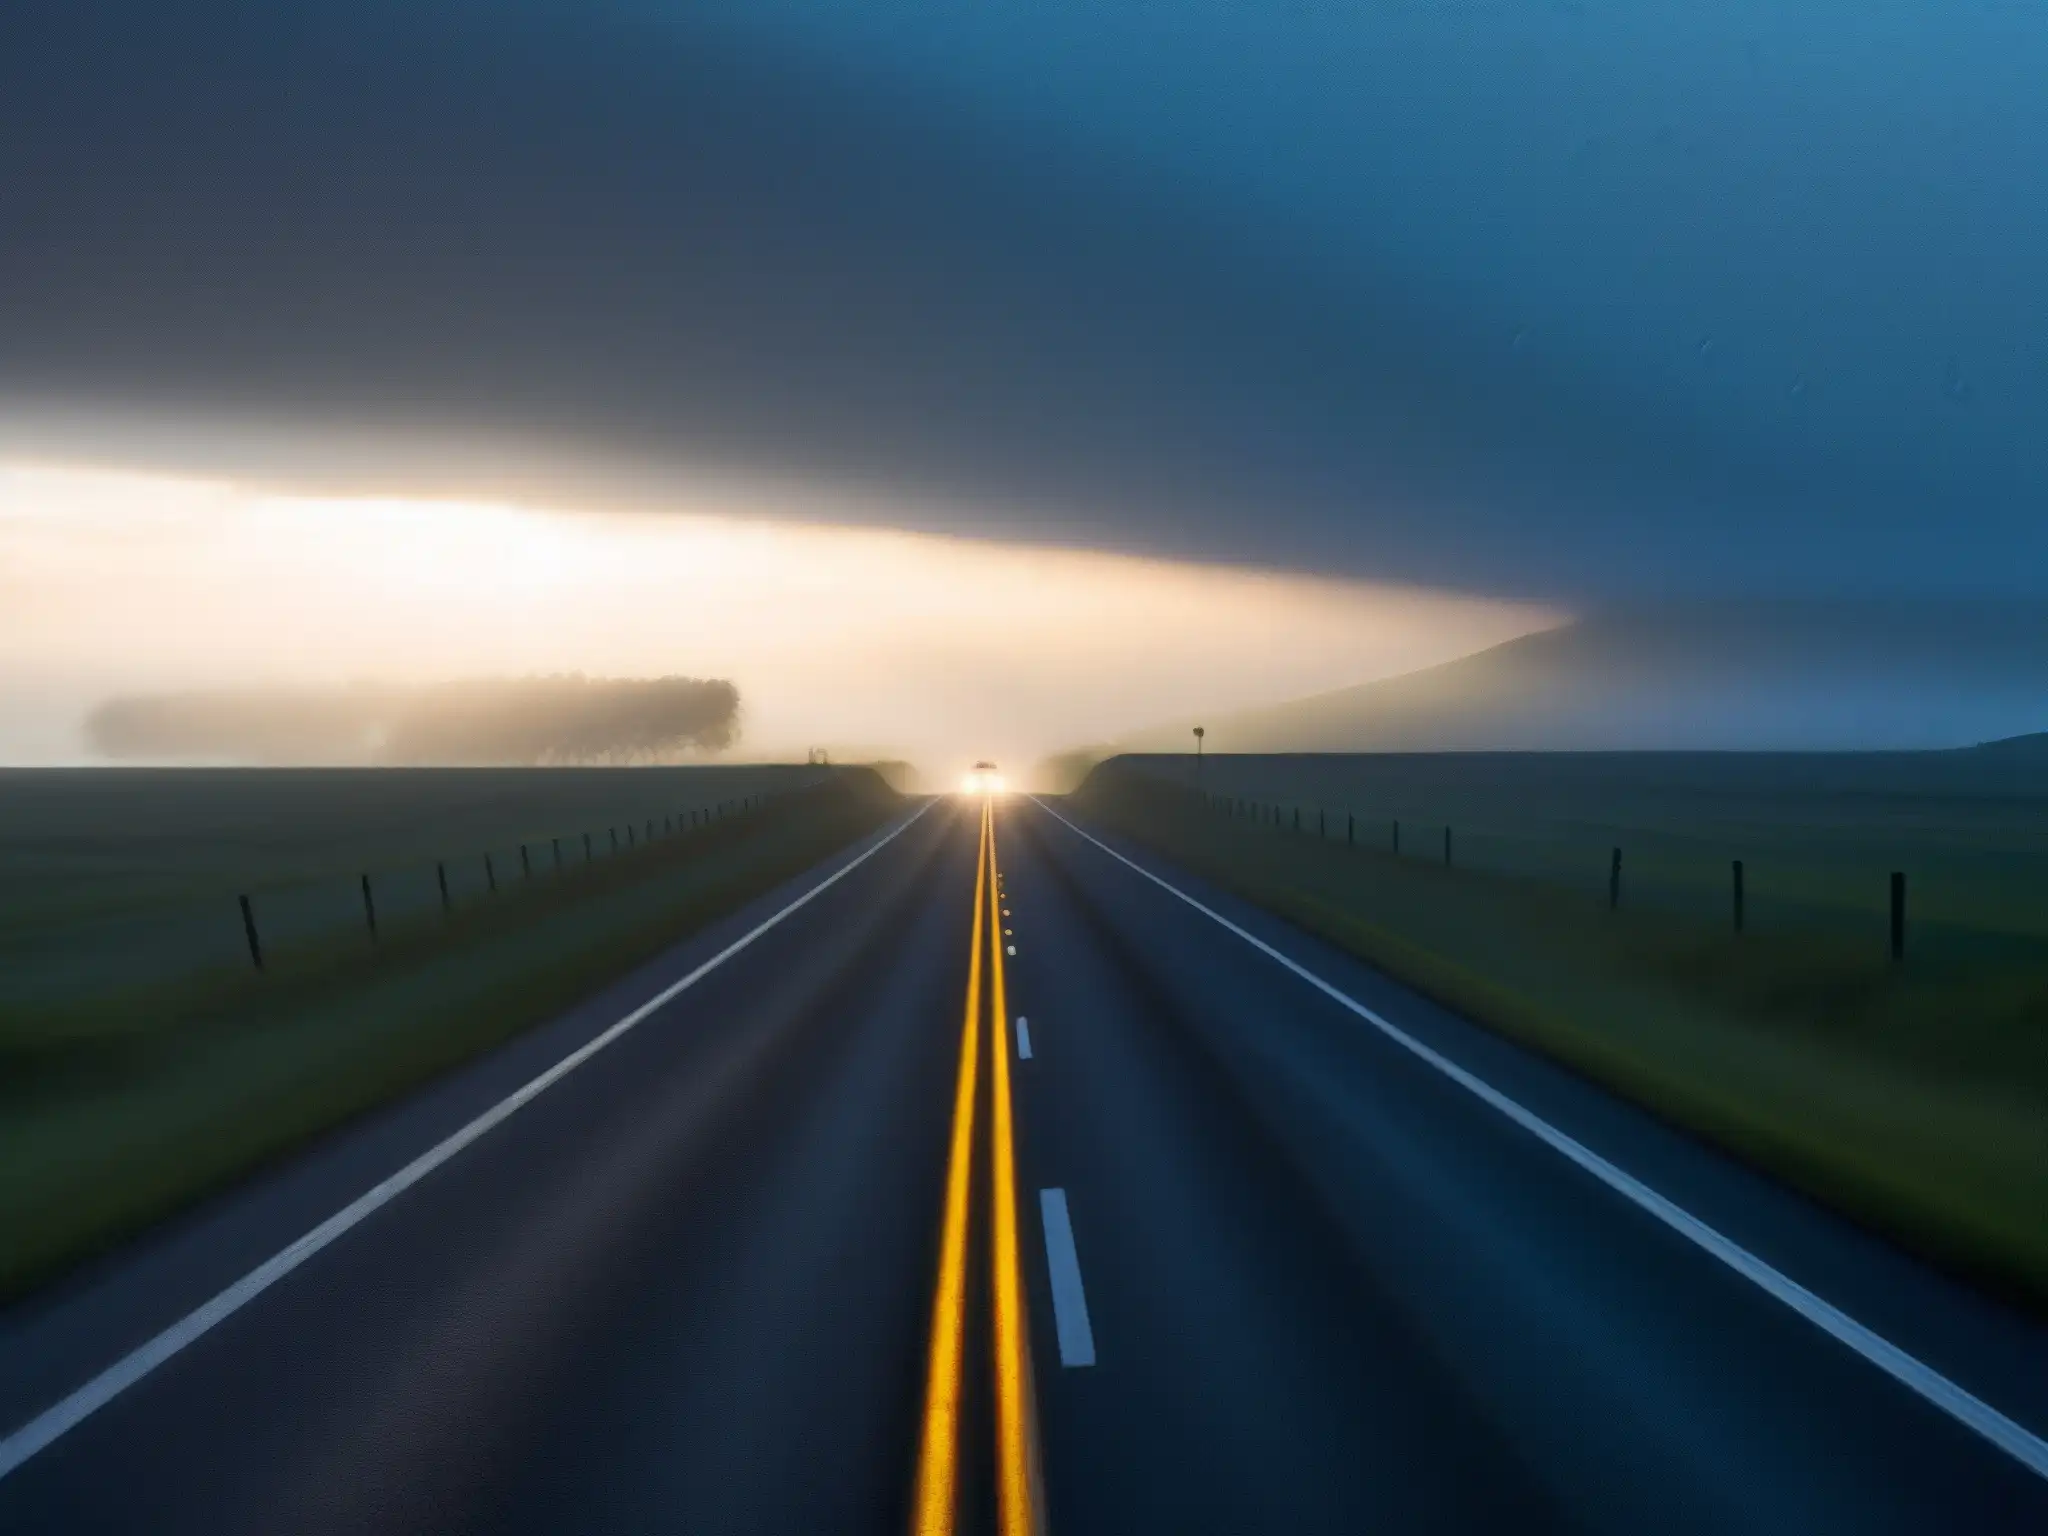 Un solitario autoestopista fantasma en la misteriosa TransCanada Highway al atardecer, iluminado por luces de autos